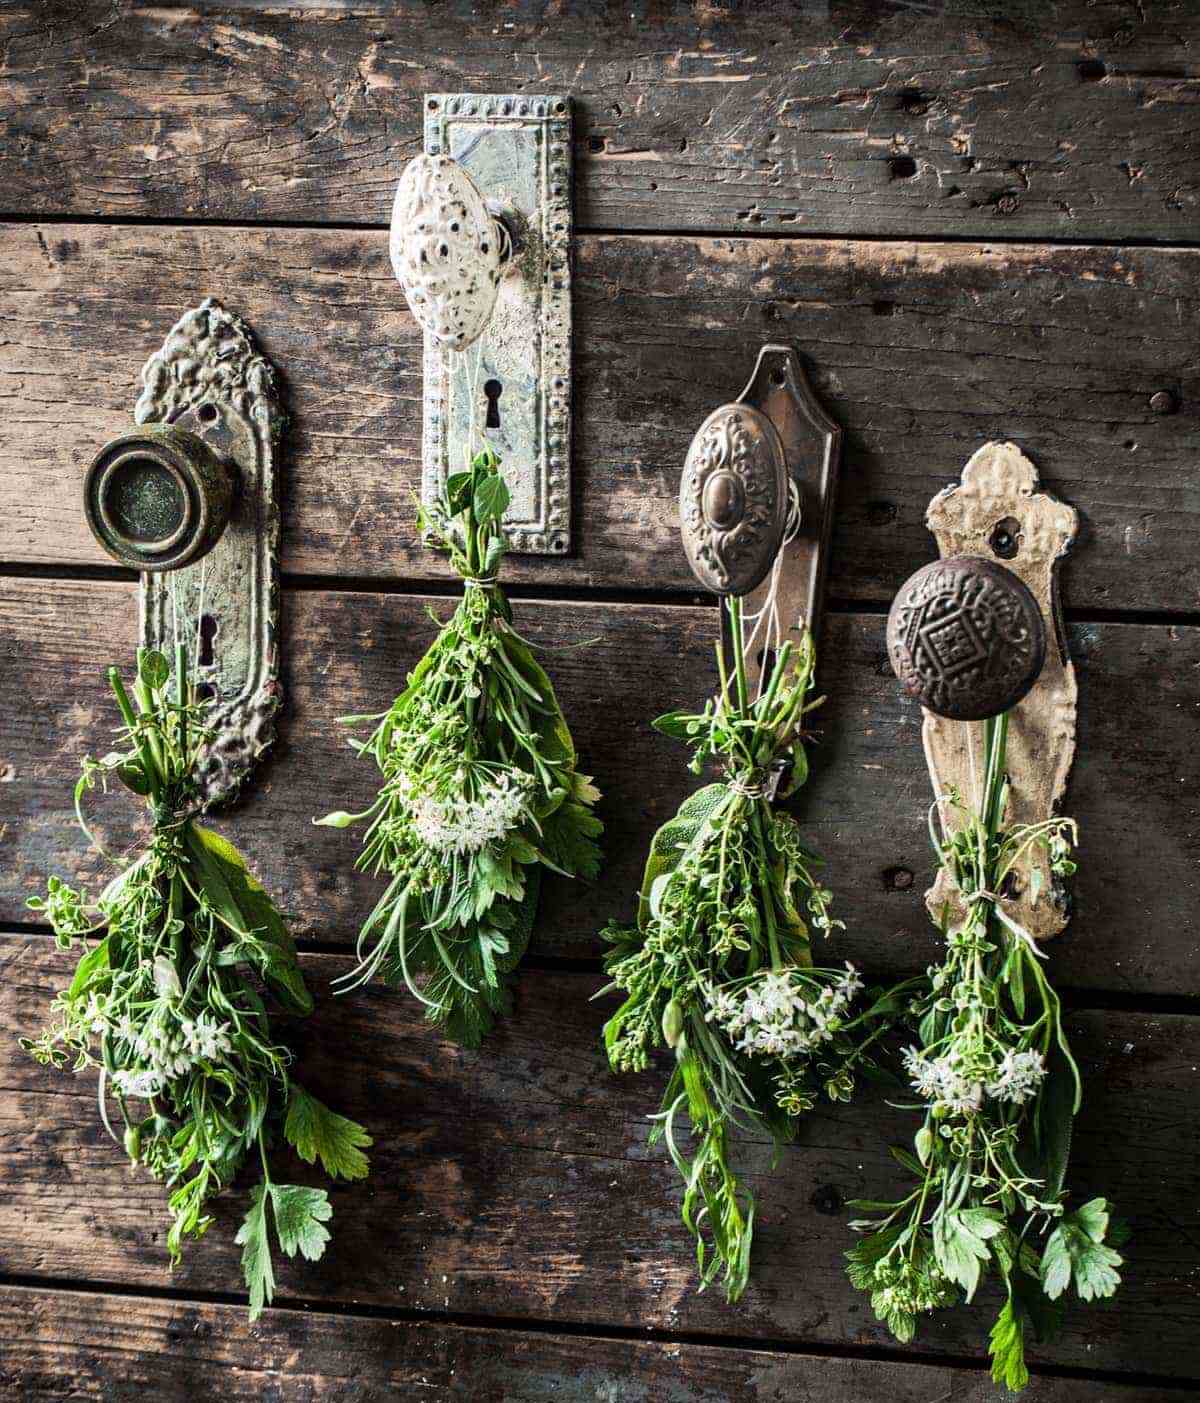 Herbs hanging on rustic door knobs